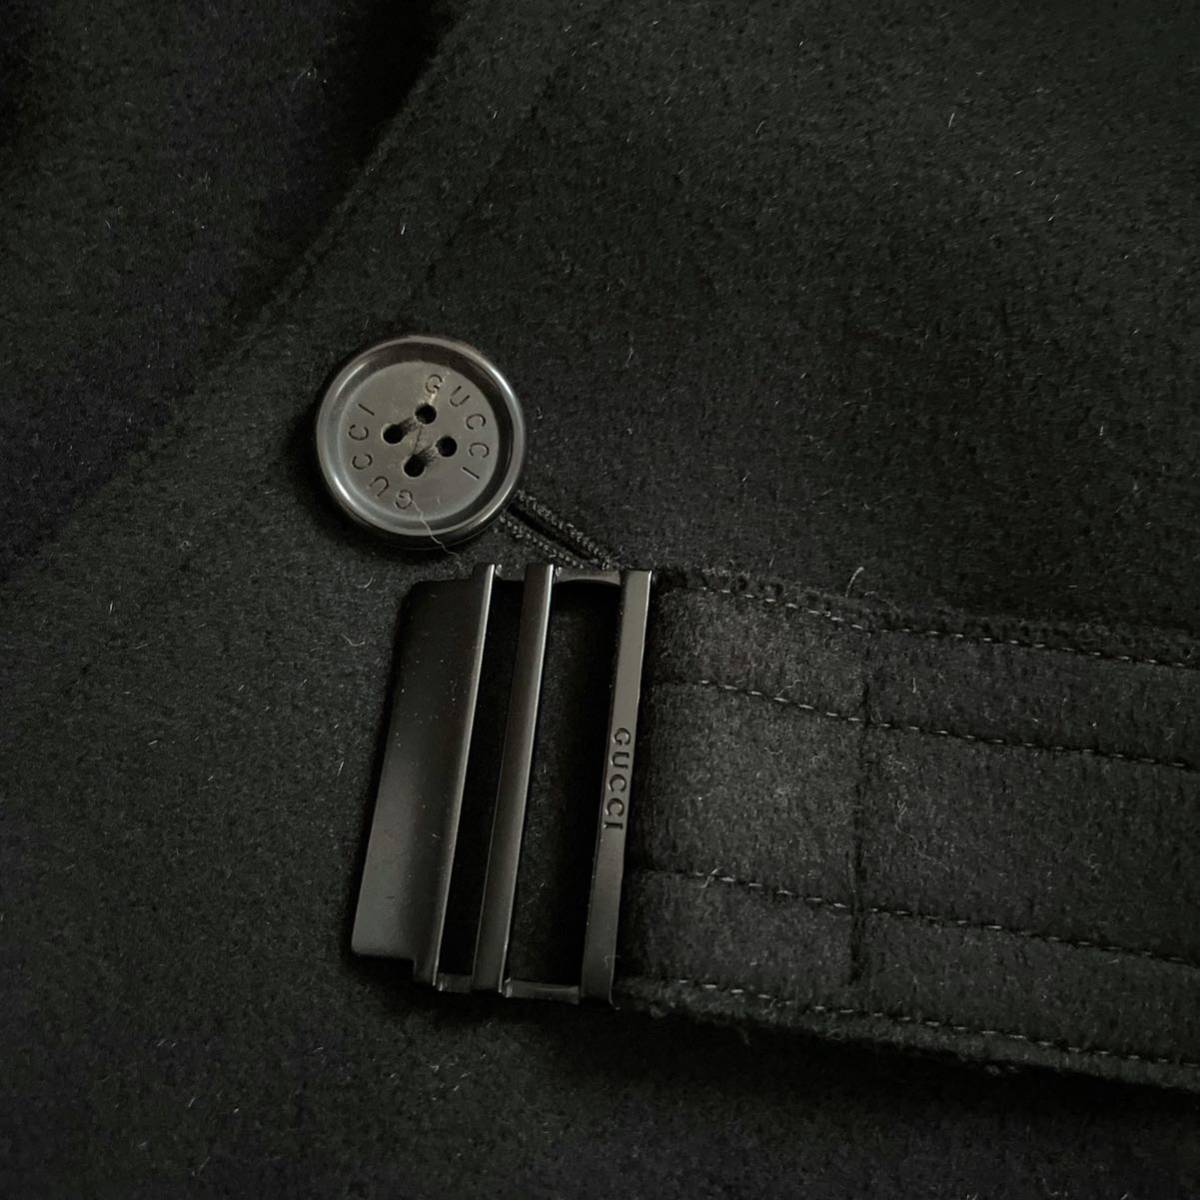 [ бесплатная доставка ][ пик ][ Tom Ford период ][ прекрасный товар ]GUCCI Gucci cut off шерсть тренчкот чёрный длинное пальто 